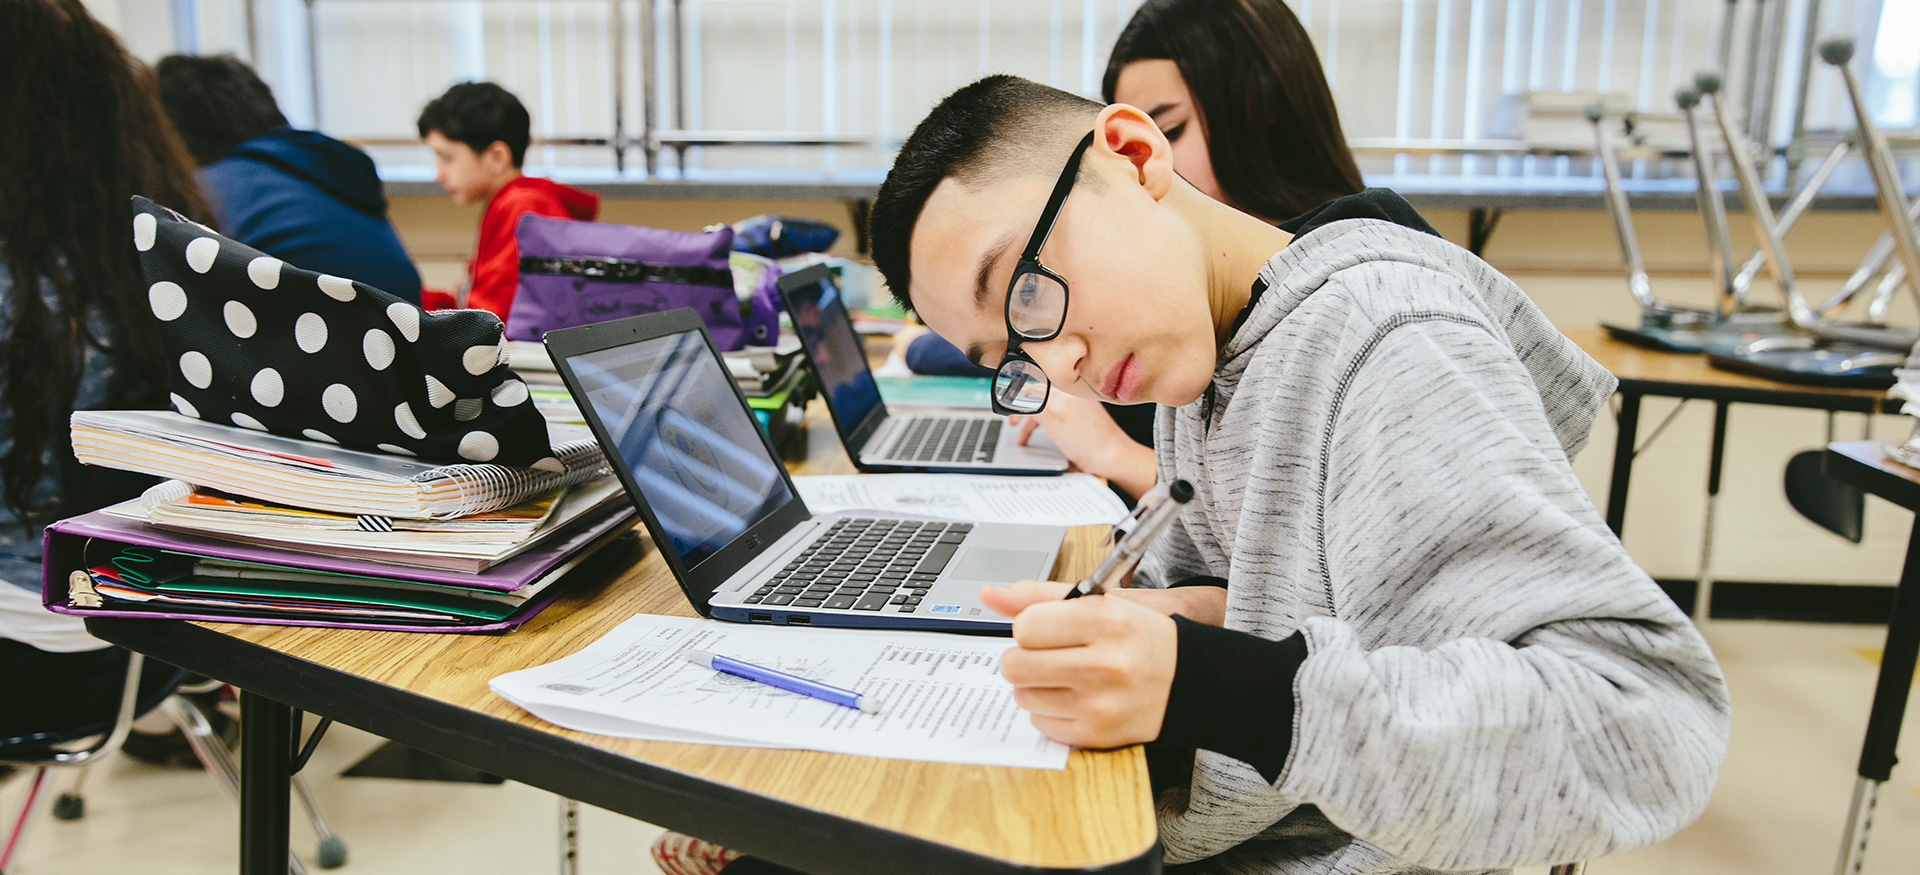 学生们用笔记本电脑在课桌上独立学习。一个学生正俯身在纸上写字。